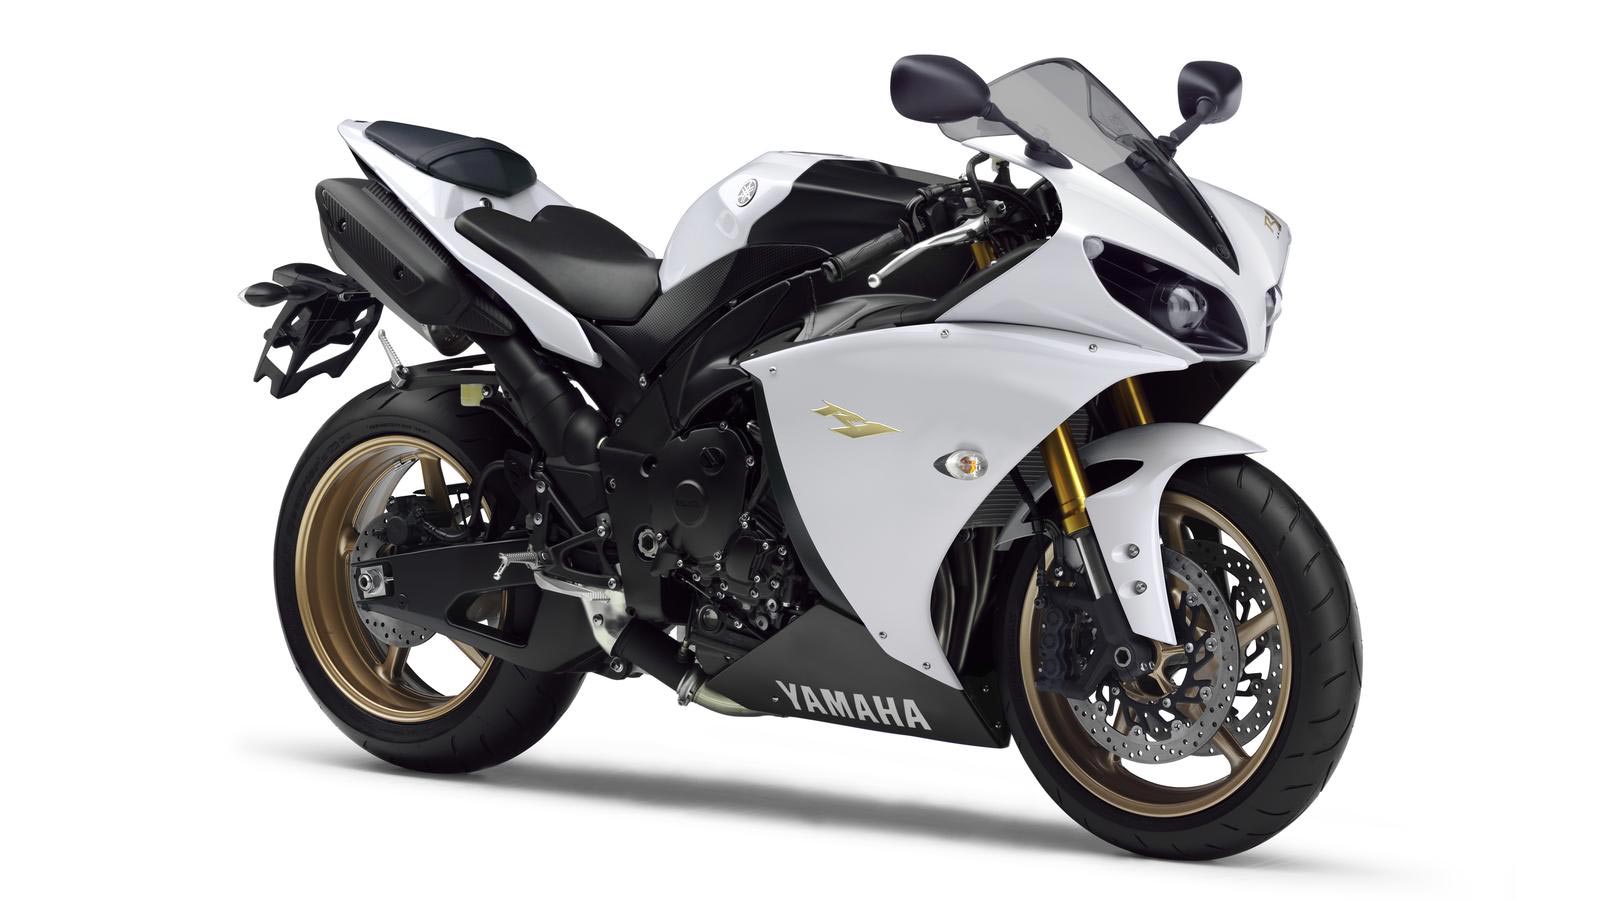 Novedades para la Yamaha R1 en 2012